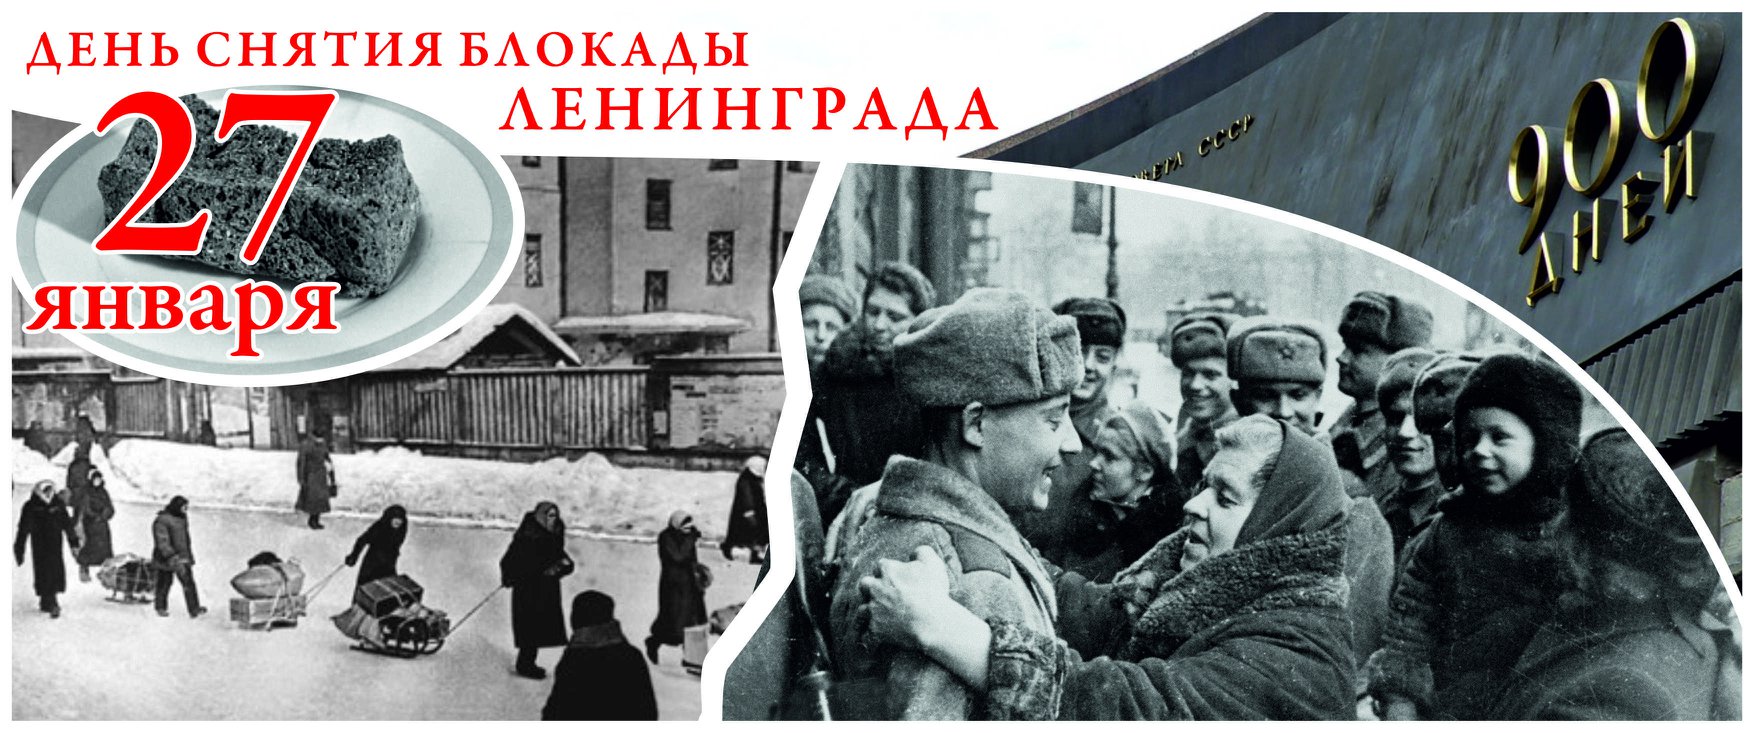 Вечер памяти "900 дней веры, отваги, мужества", посвященный 75 годовщине Дню снятия блокады Ленинграда в рамках Года памяти и славы